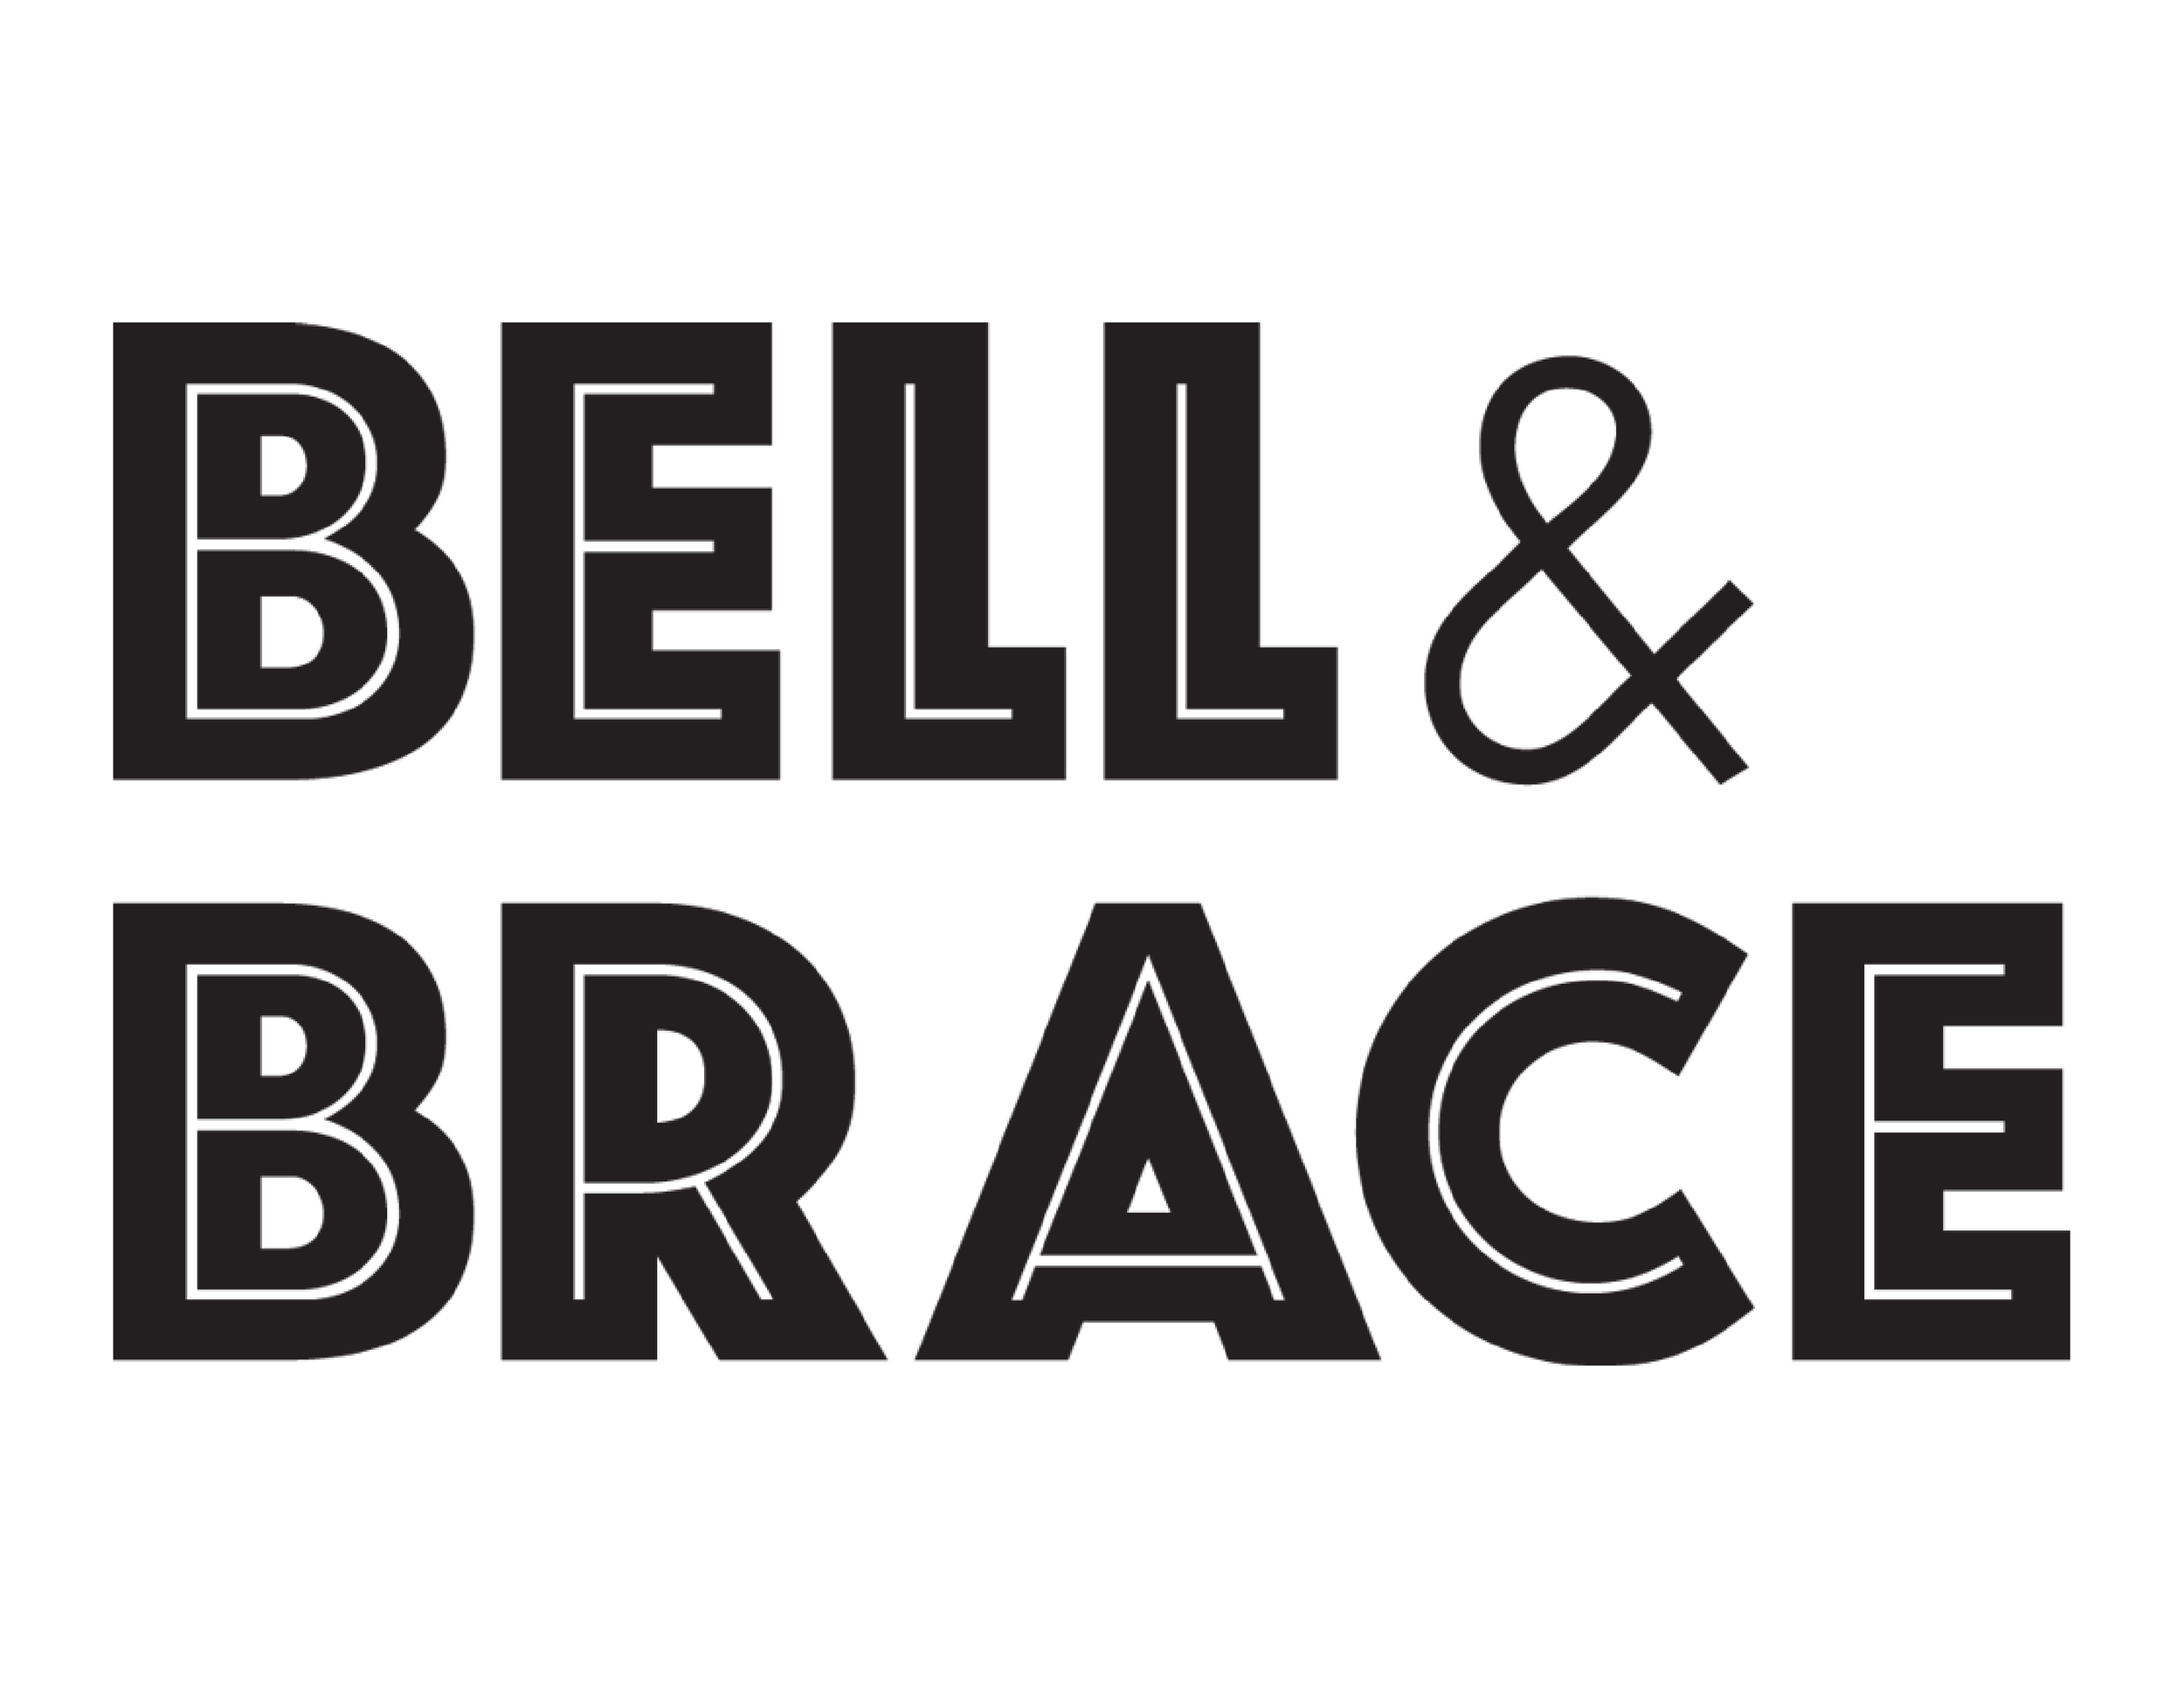 Bell & Brace - Vertical Logo.png